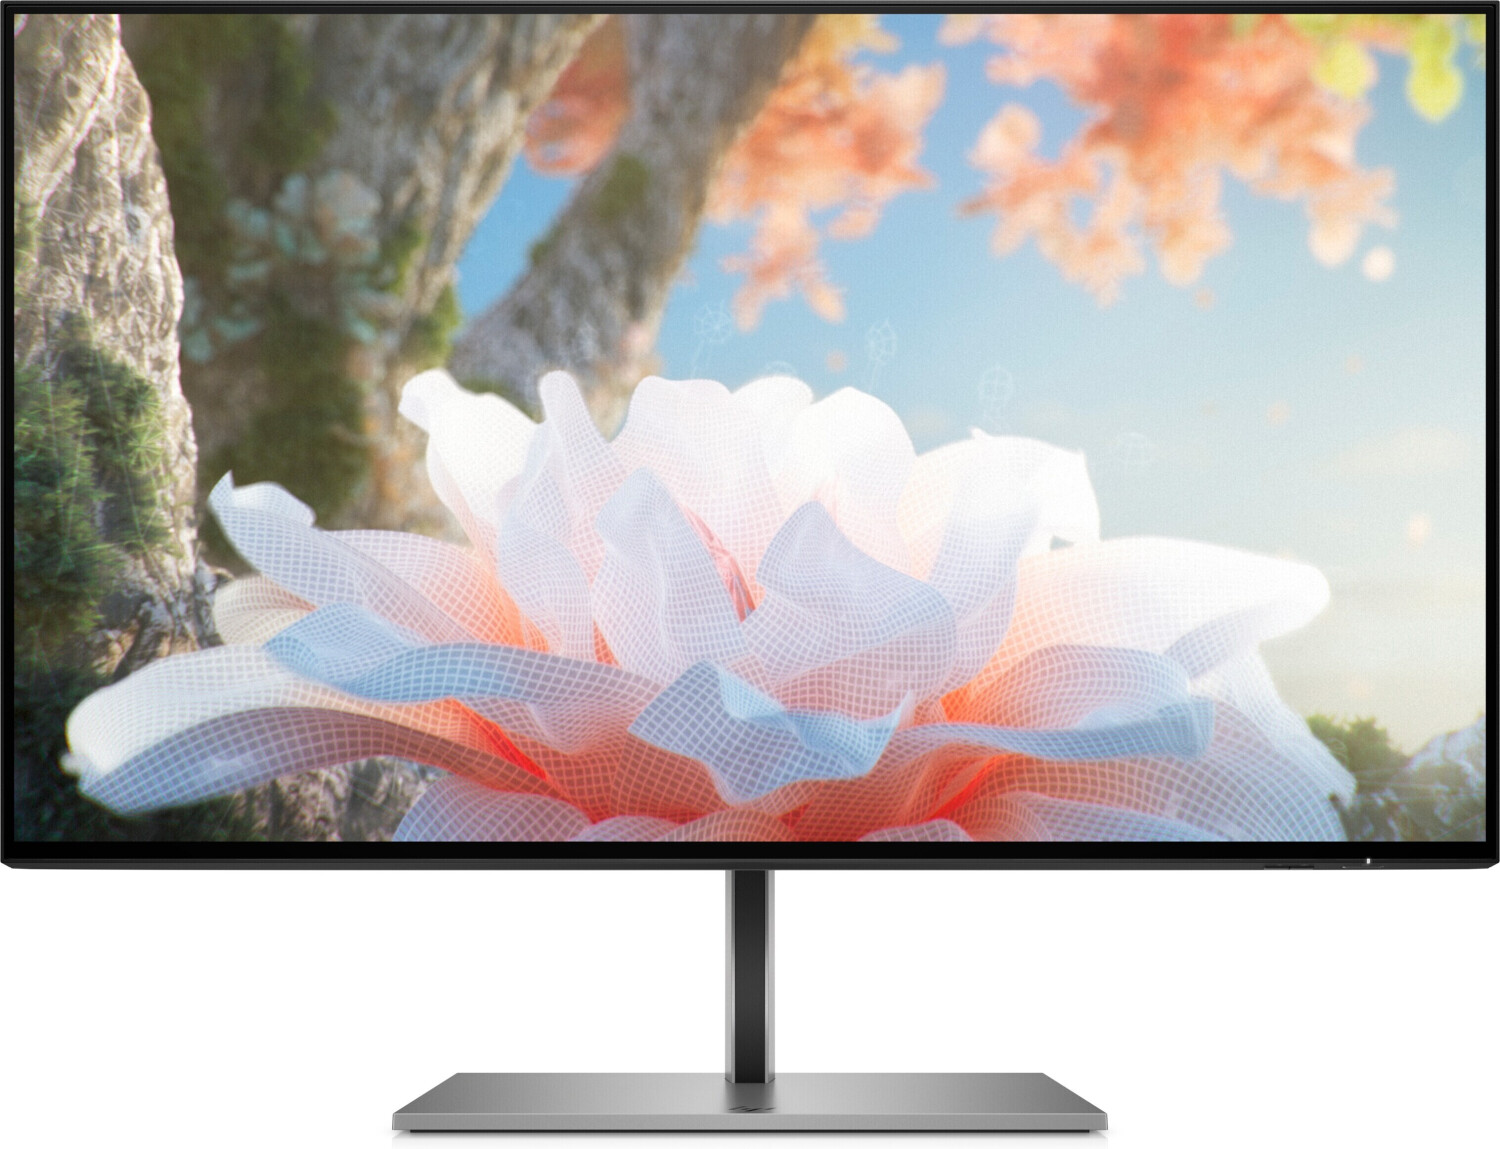 HP presenta un monitor 4K panorámico con el tamaño de dos